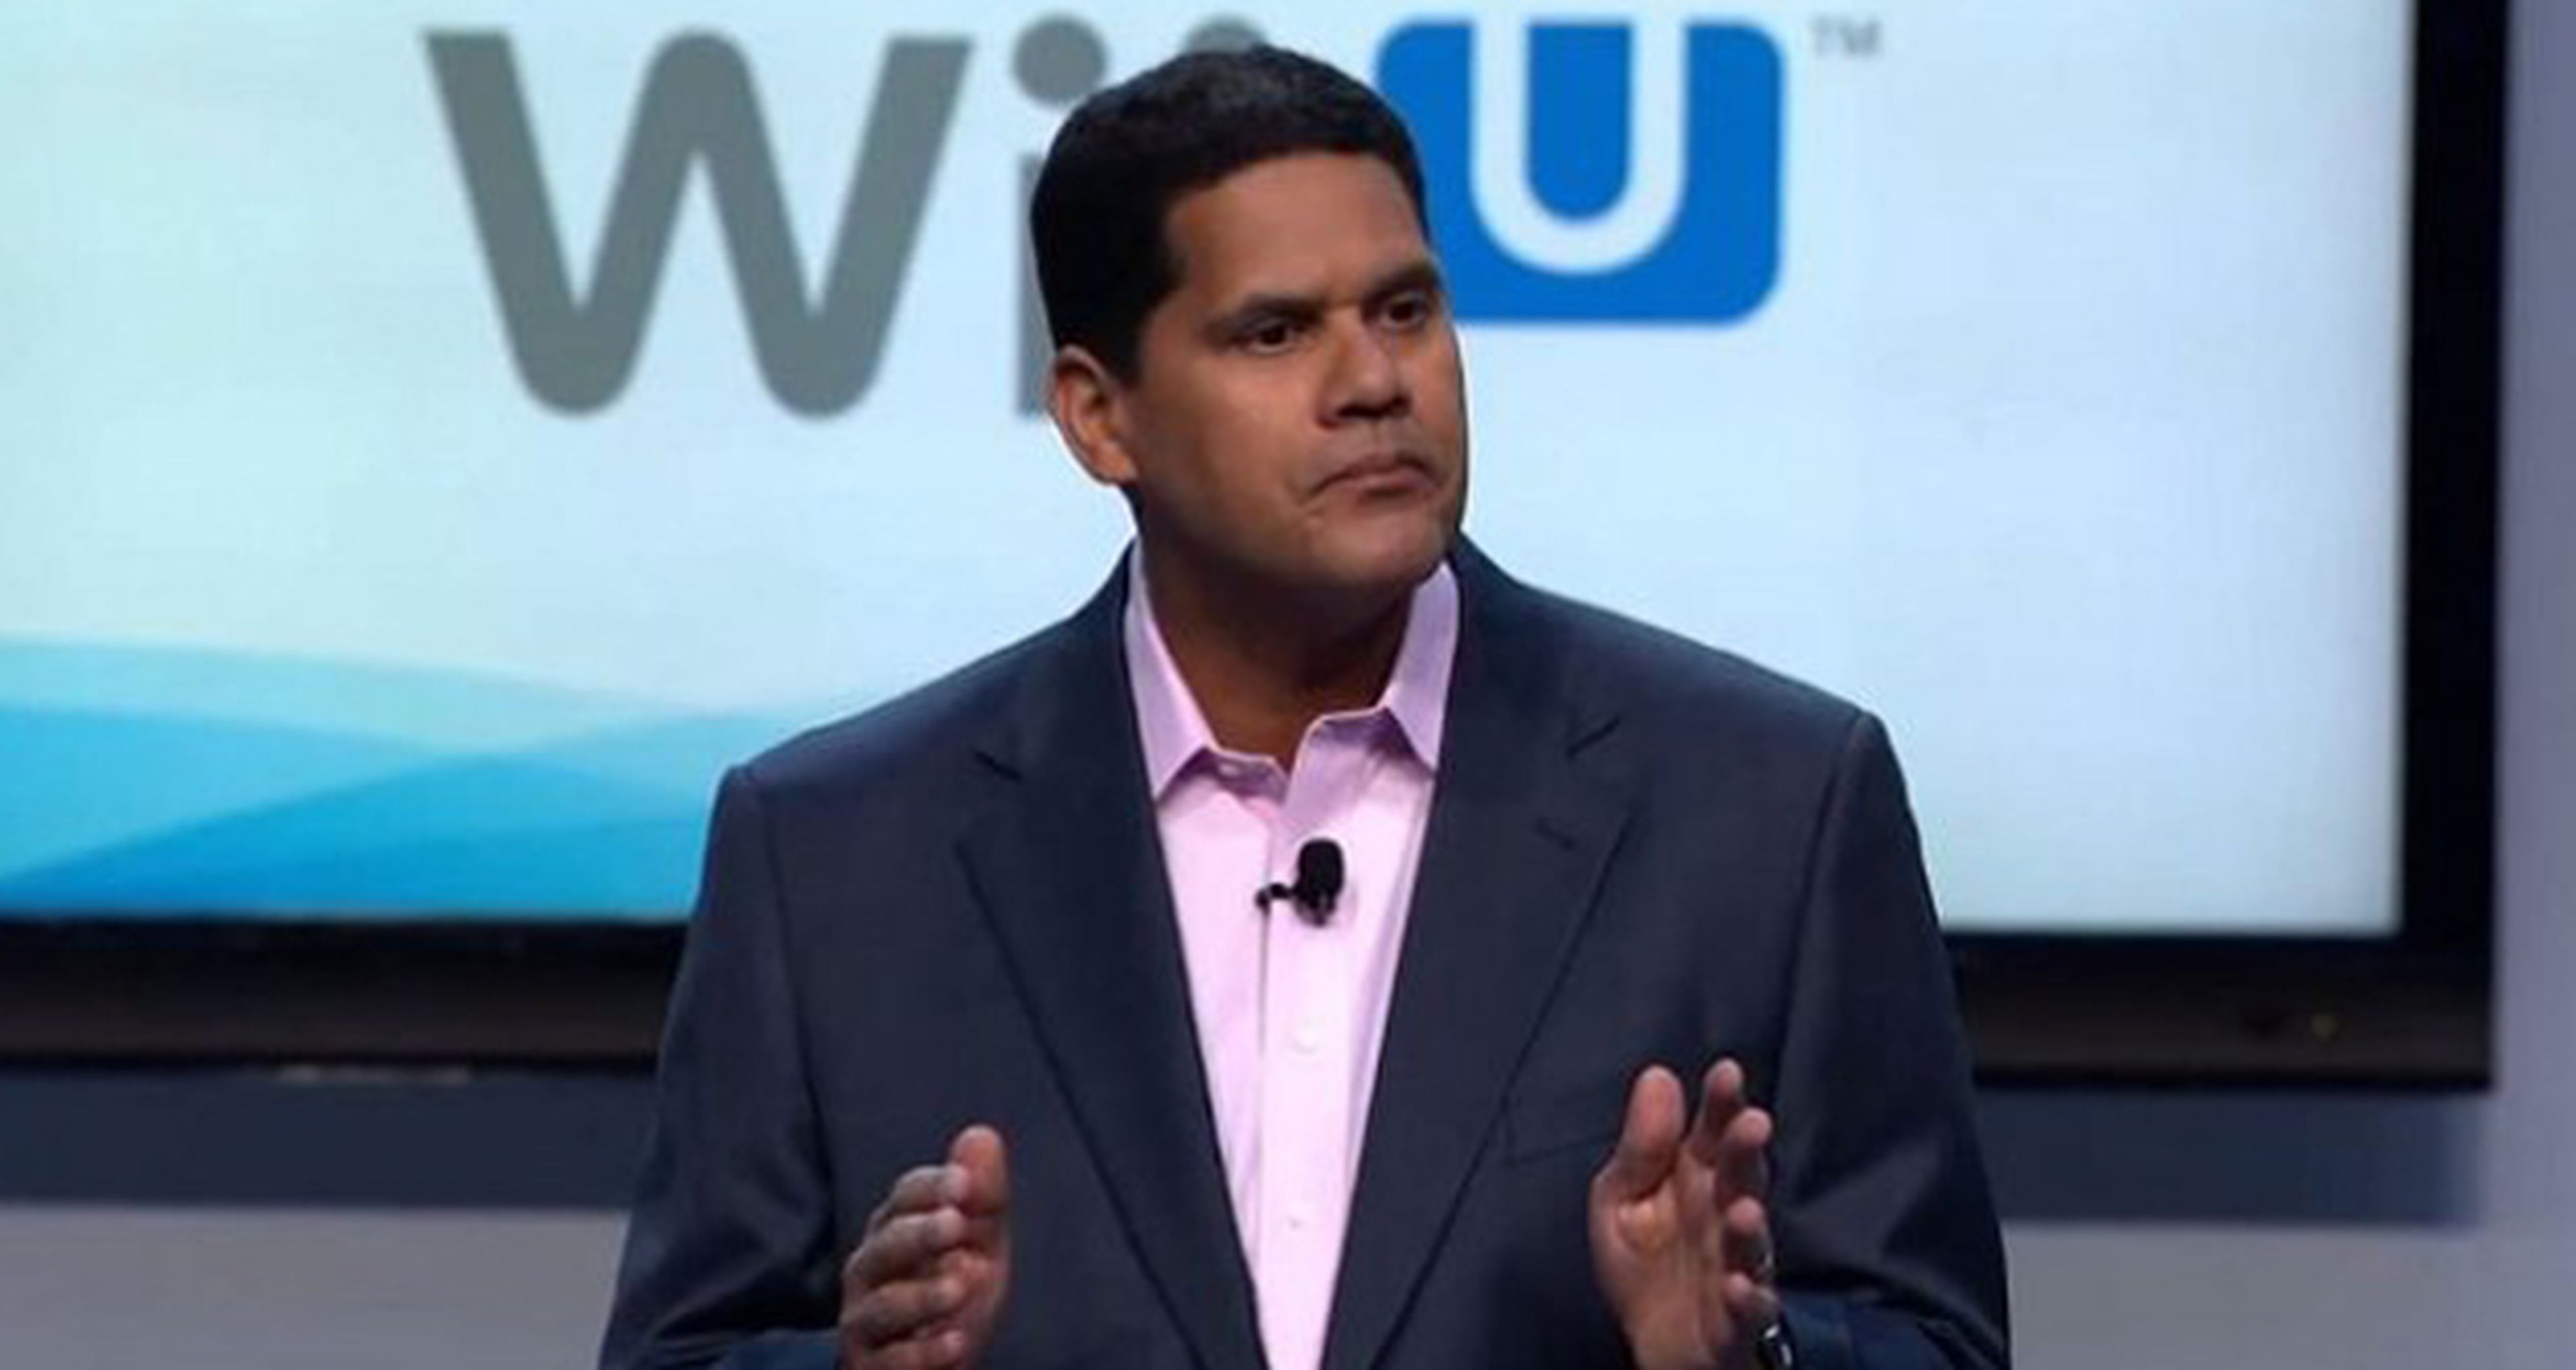 Según Reggie, Wii U es la consola con más valor en estos momentos